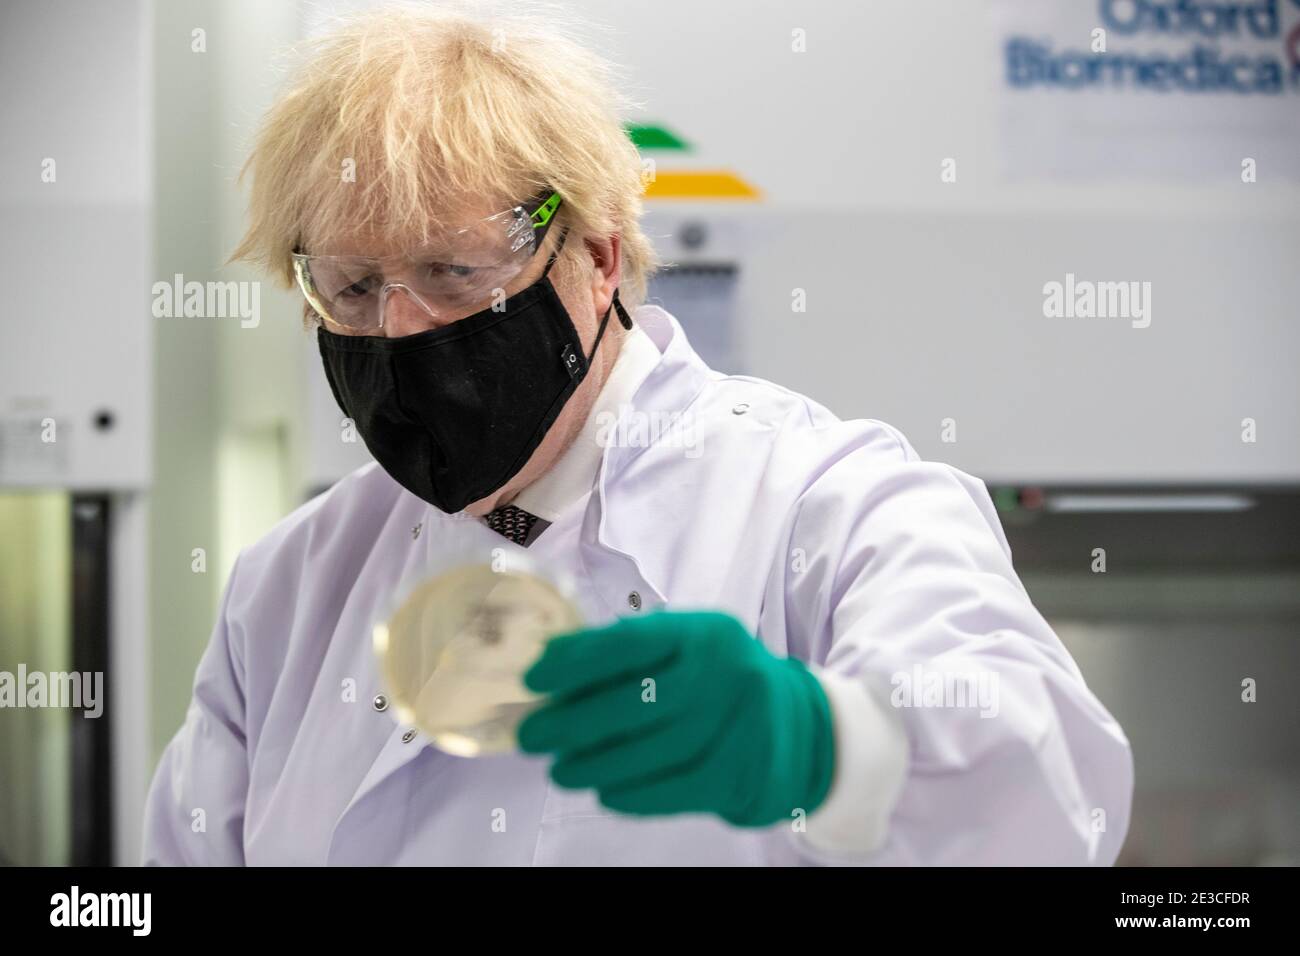 Le Premier ministre Boris Johnson examine une boîte de Petri dans le laboratoire de contrôle de la qualité, où des lots de vaccins sont testés, lors d'une visite de l'usine de fabrication du vaccin Oxford/AstraZeneca à Oxford Biomedica dans l'Oxfordshire. Date de la photo: Lundi 18 janvier 2021. Banque D'Images